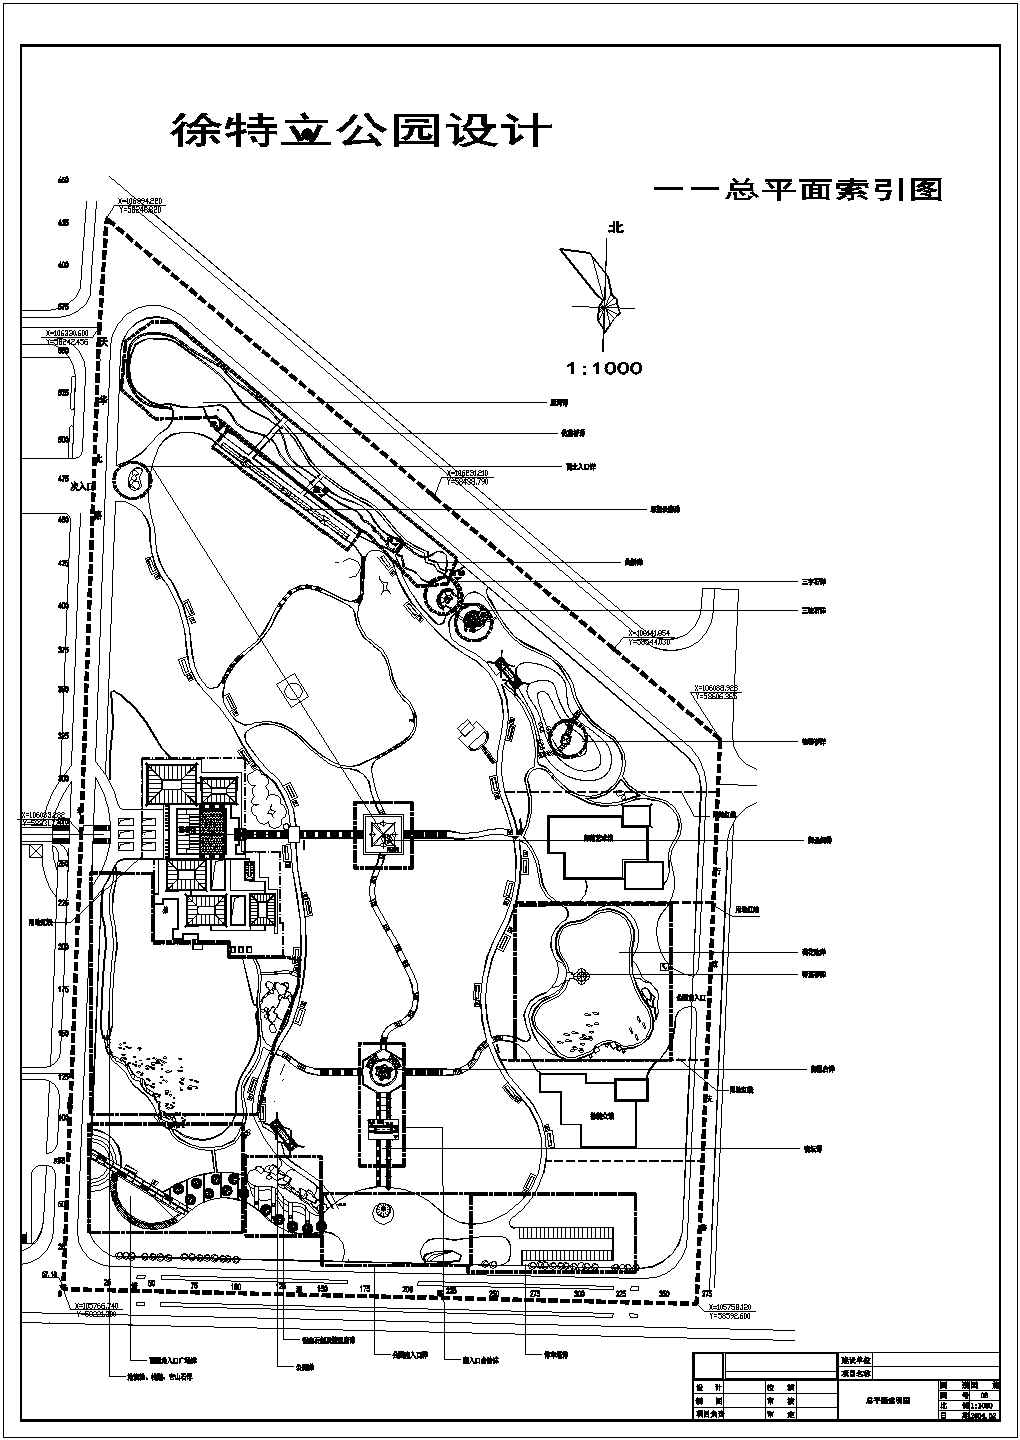 某现代主题公园CAD设计完整索引图